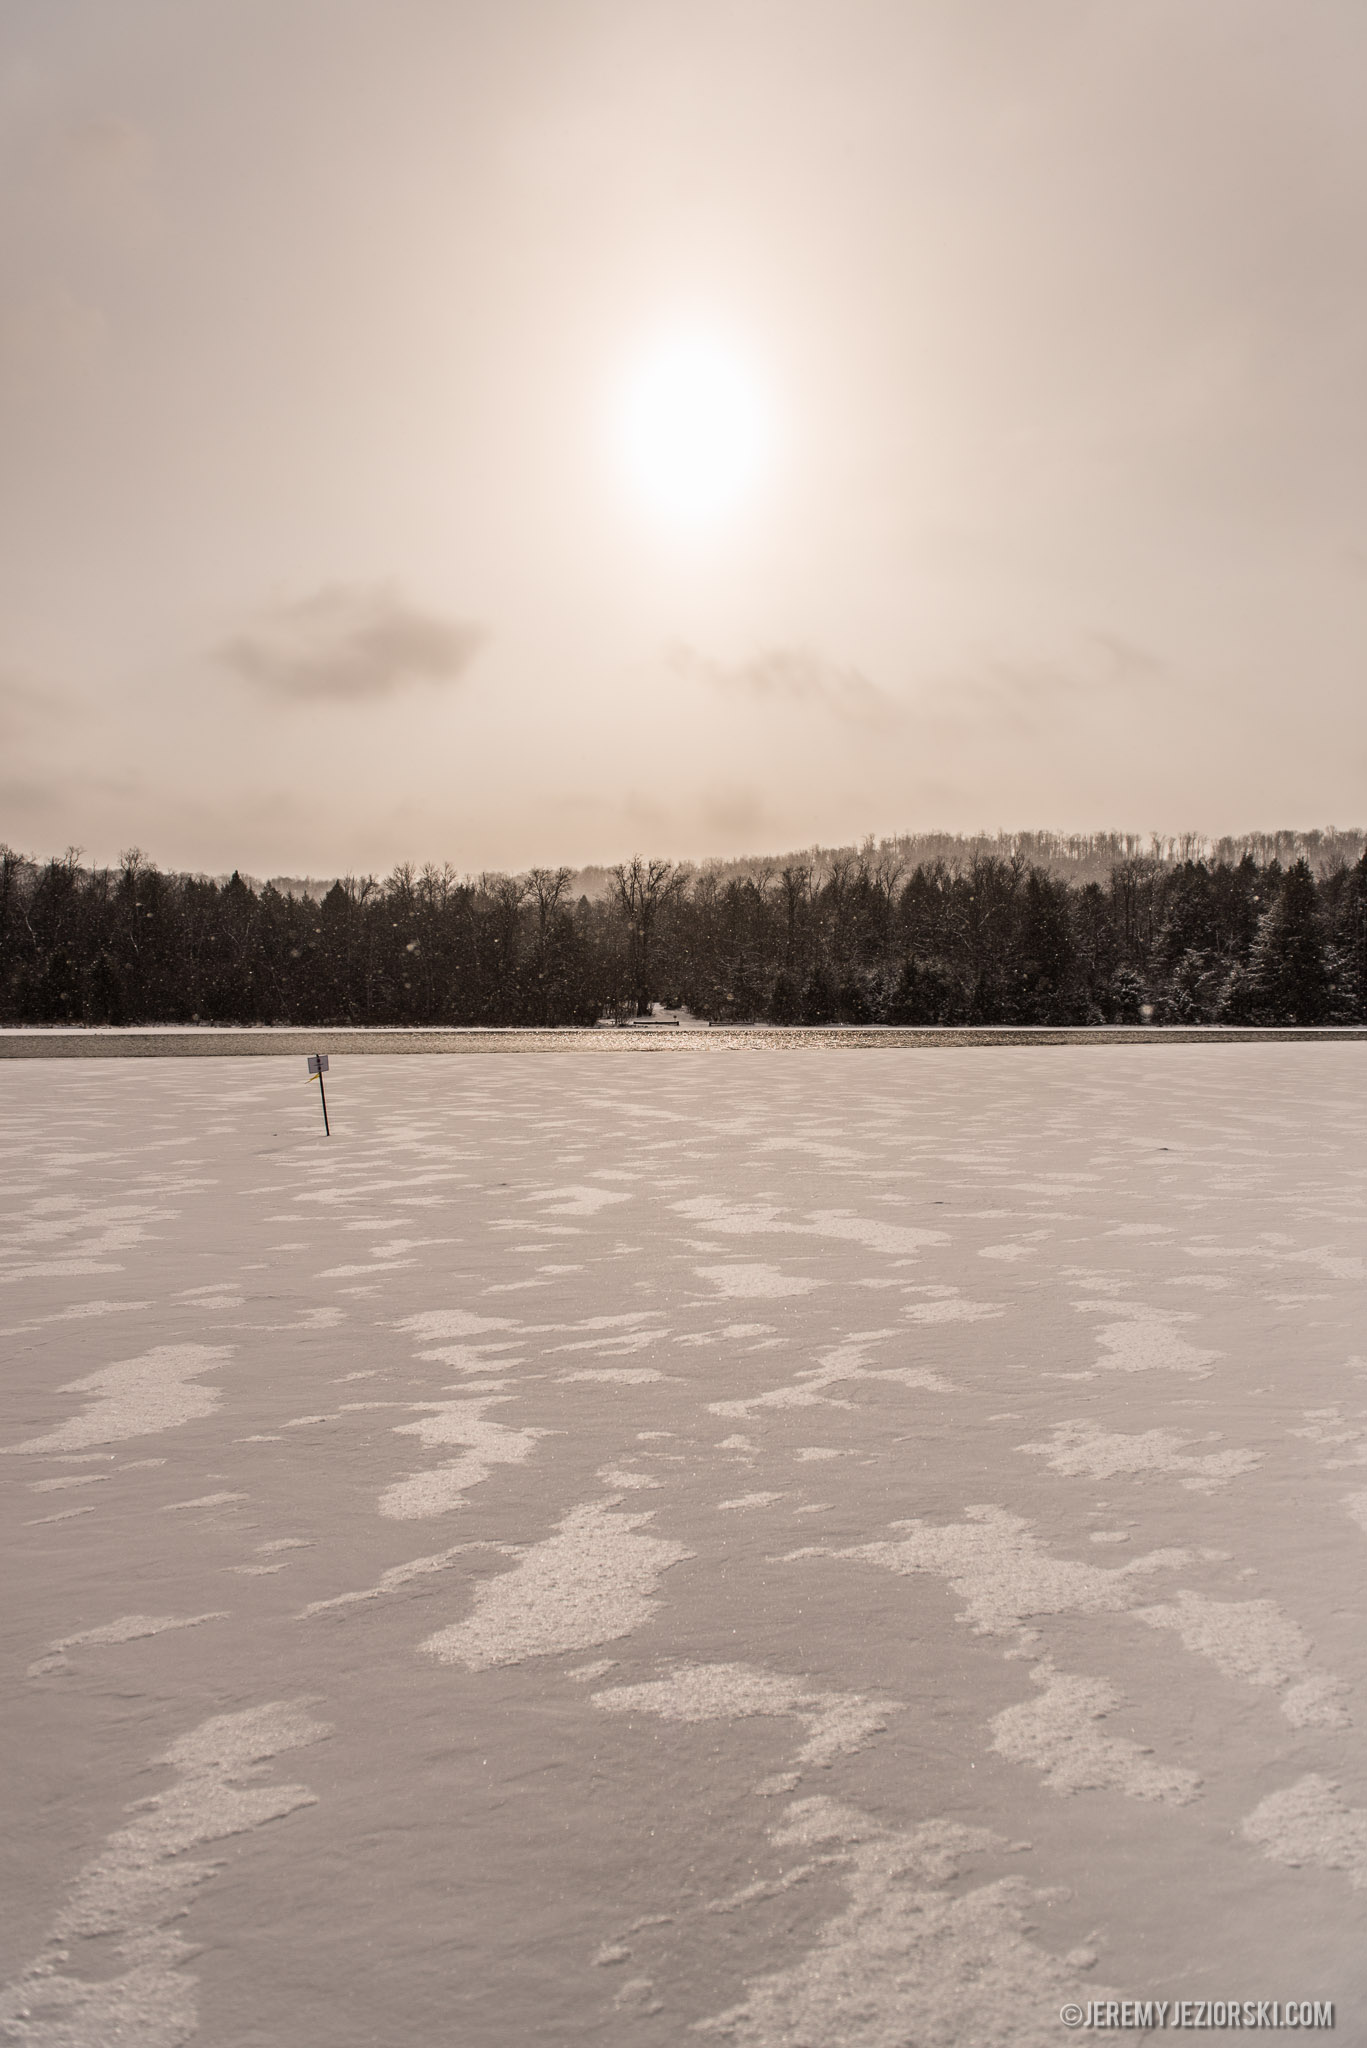 warren-county-winterfest-2014-photographer-jeremy-jeziorski-6585.jpg